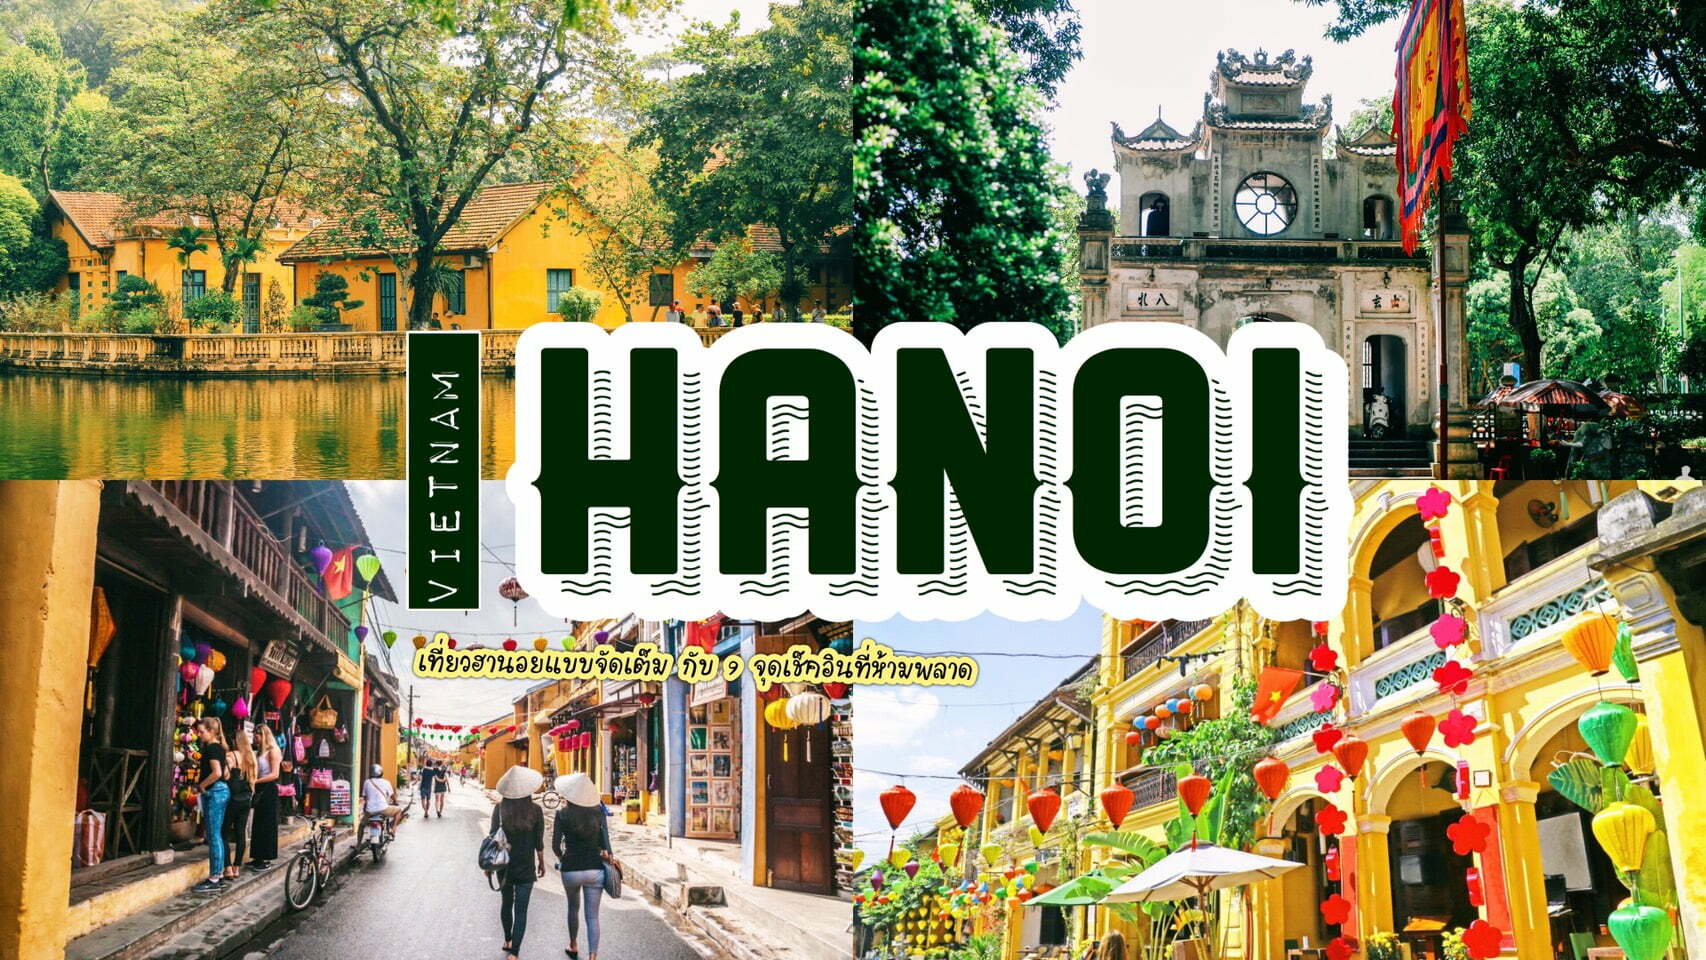 ทัวร์เวียดนาม – ชวนไปเมืองหลวงของเวียดนาม เที่ยวฮานอยจัดเต็ม กับ 9 จุดเช็คอิน ที่ห้ามพลาด